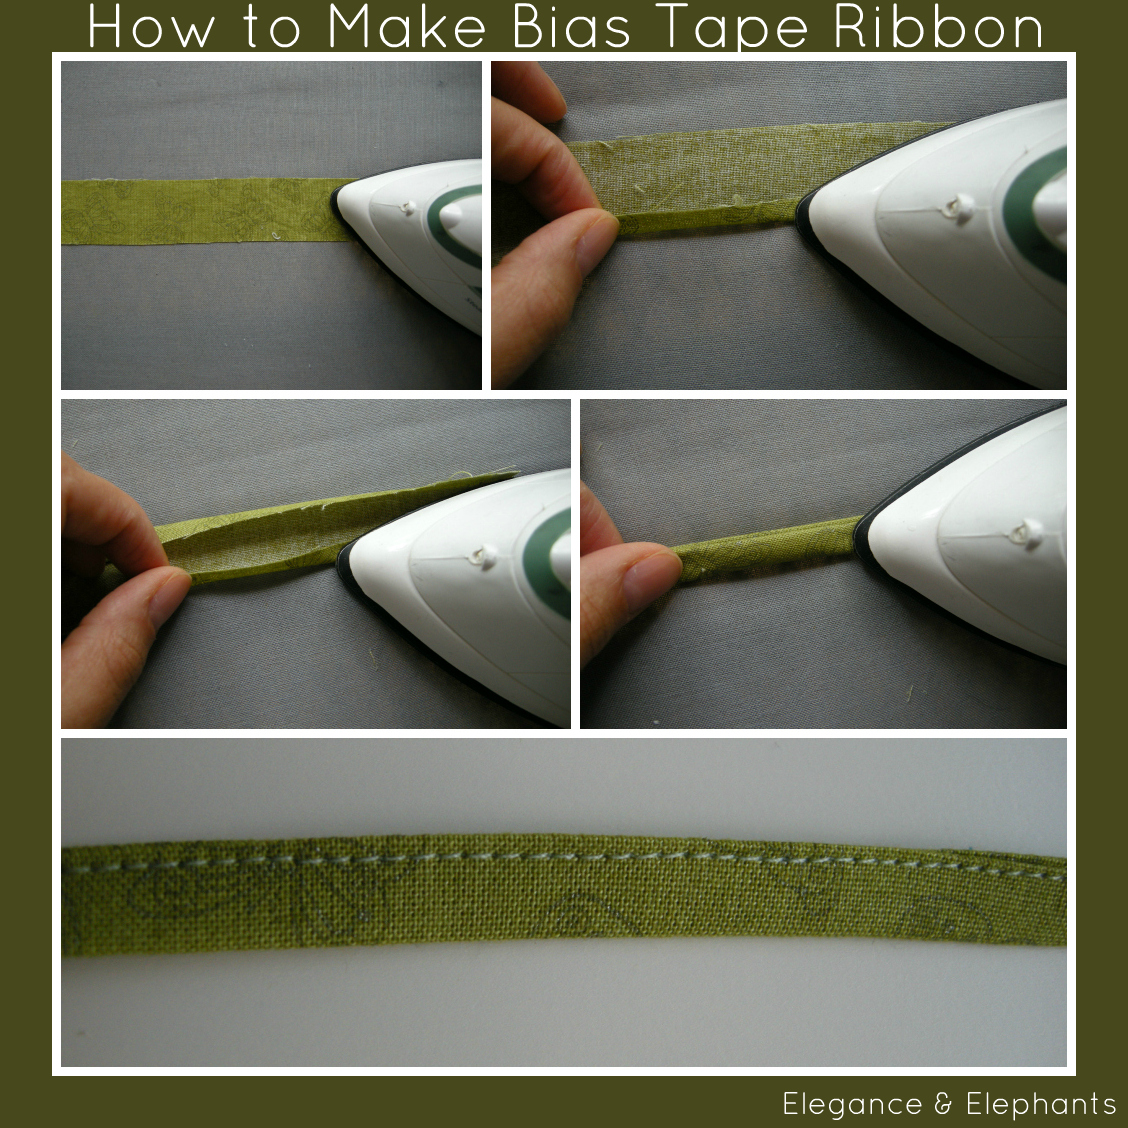 How to Make Bias Tape Ribbon